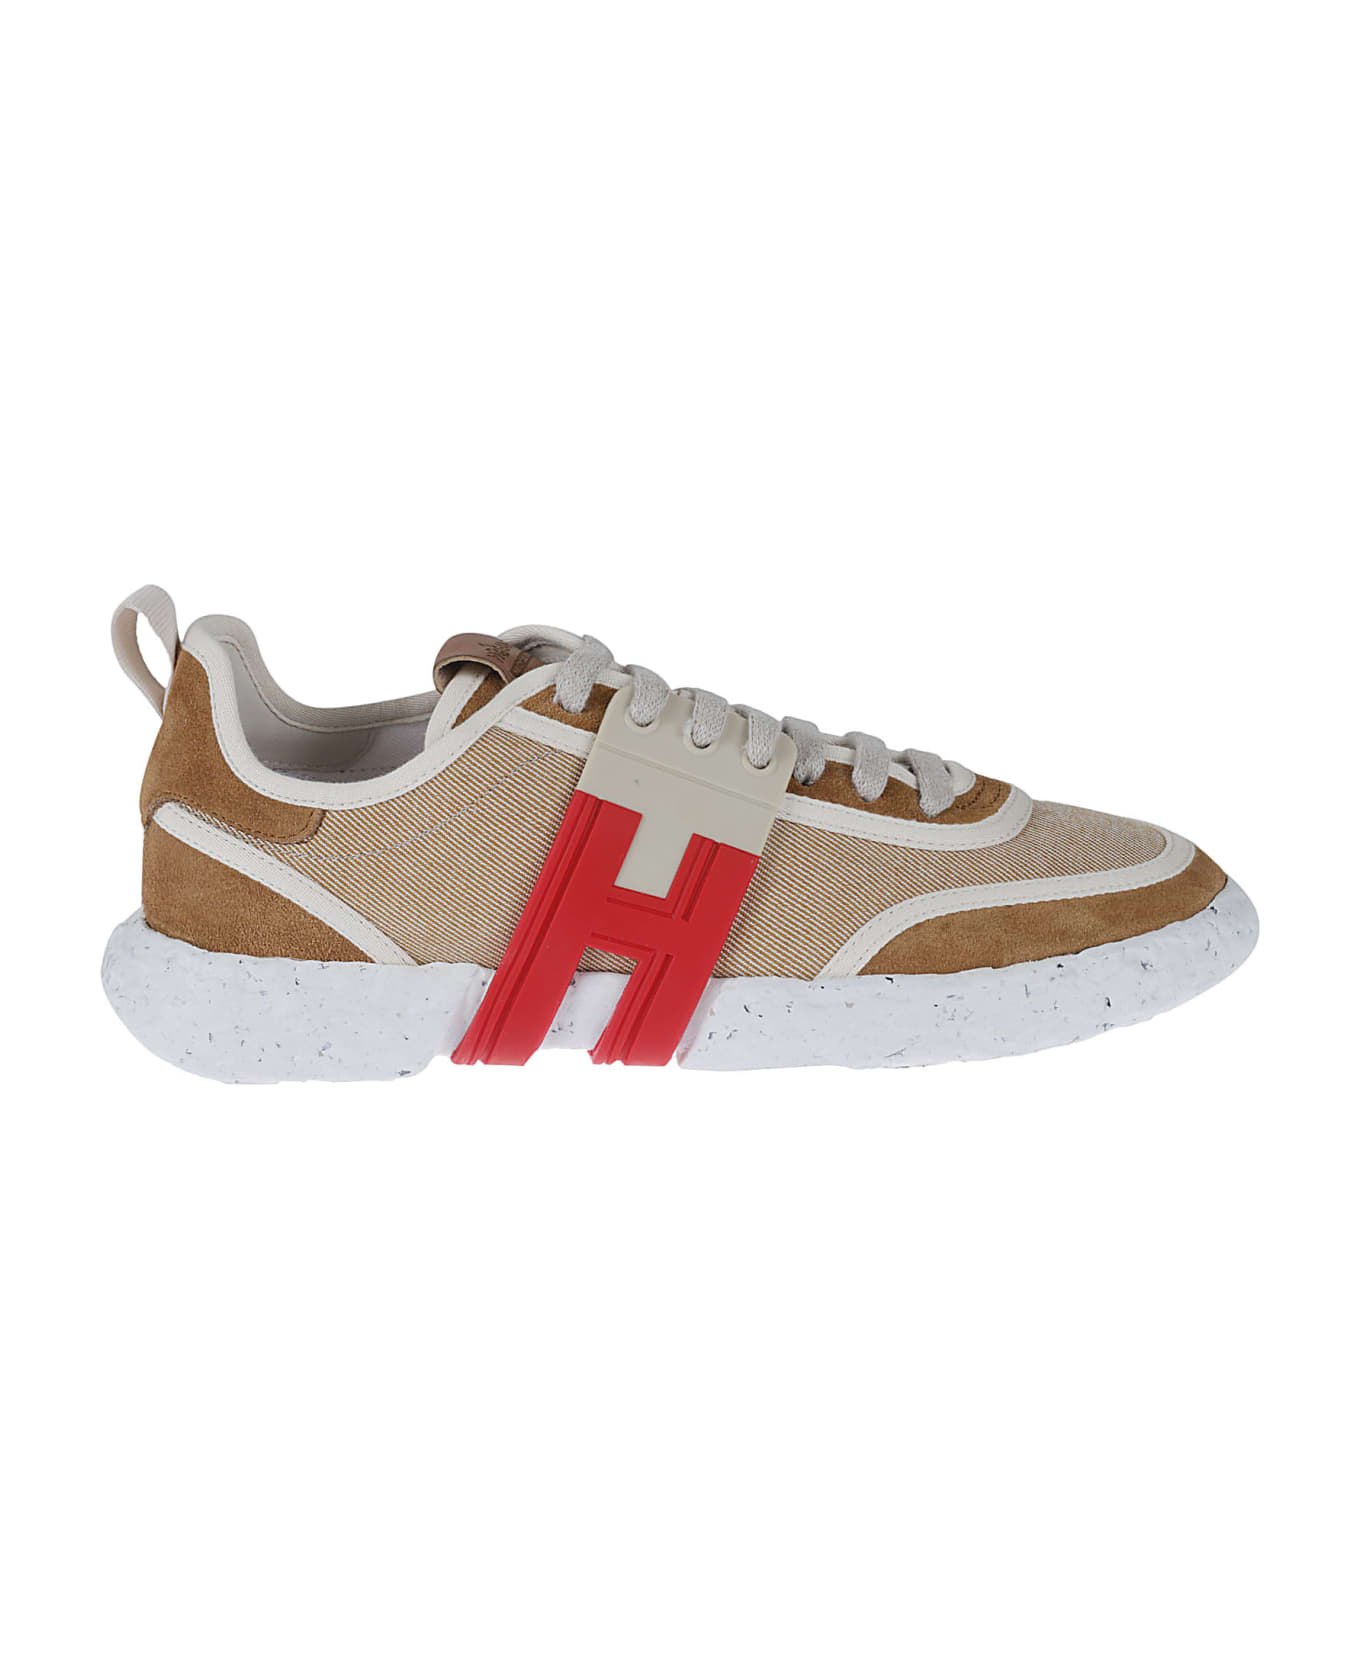 Hogan 3r Sneakers - Caramel